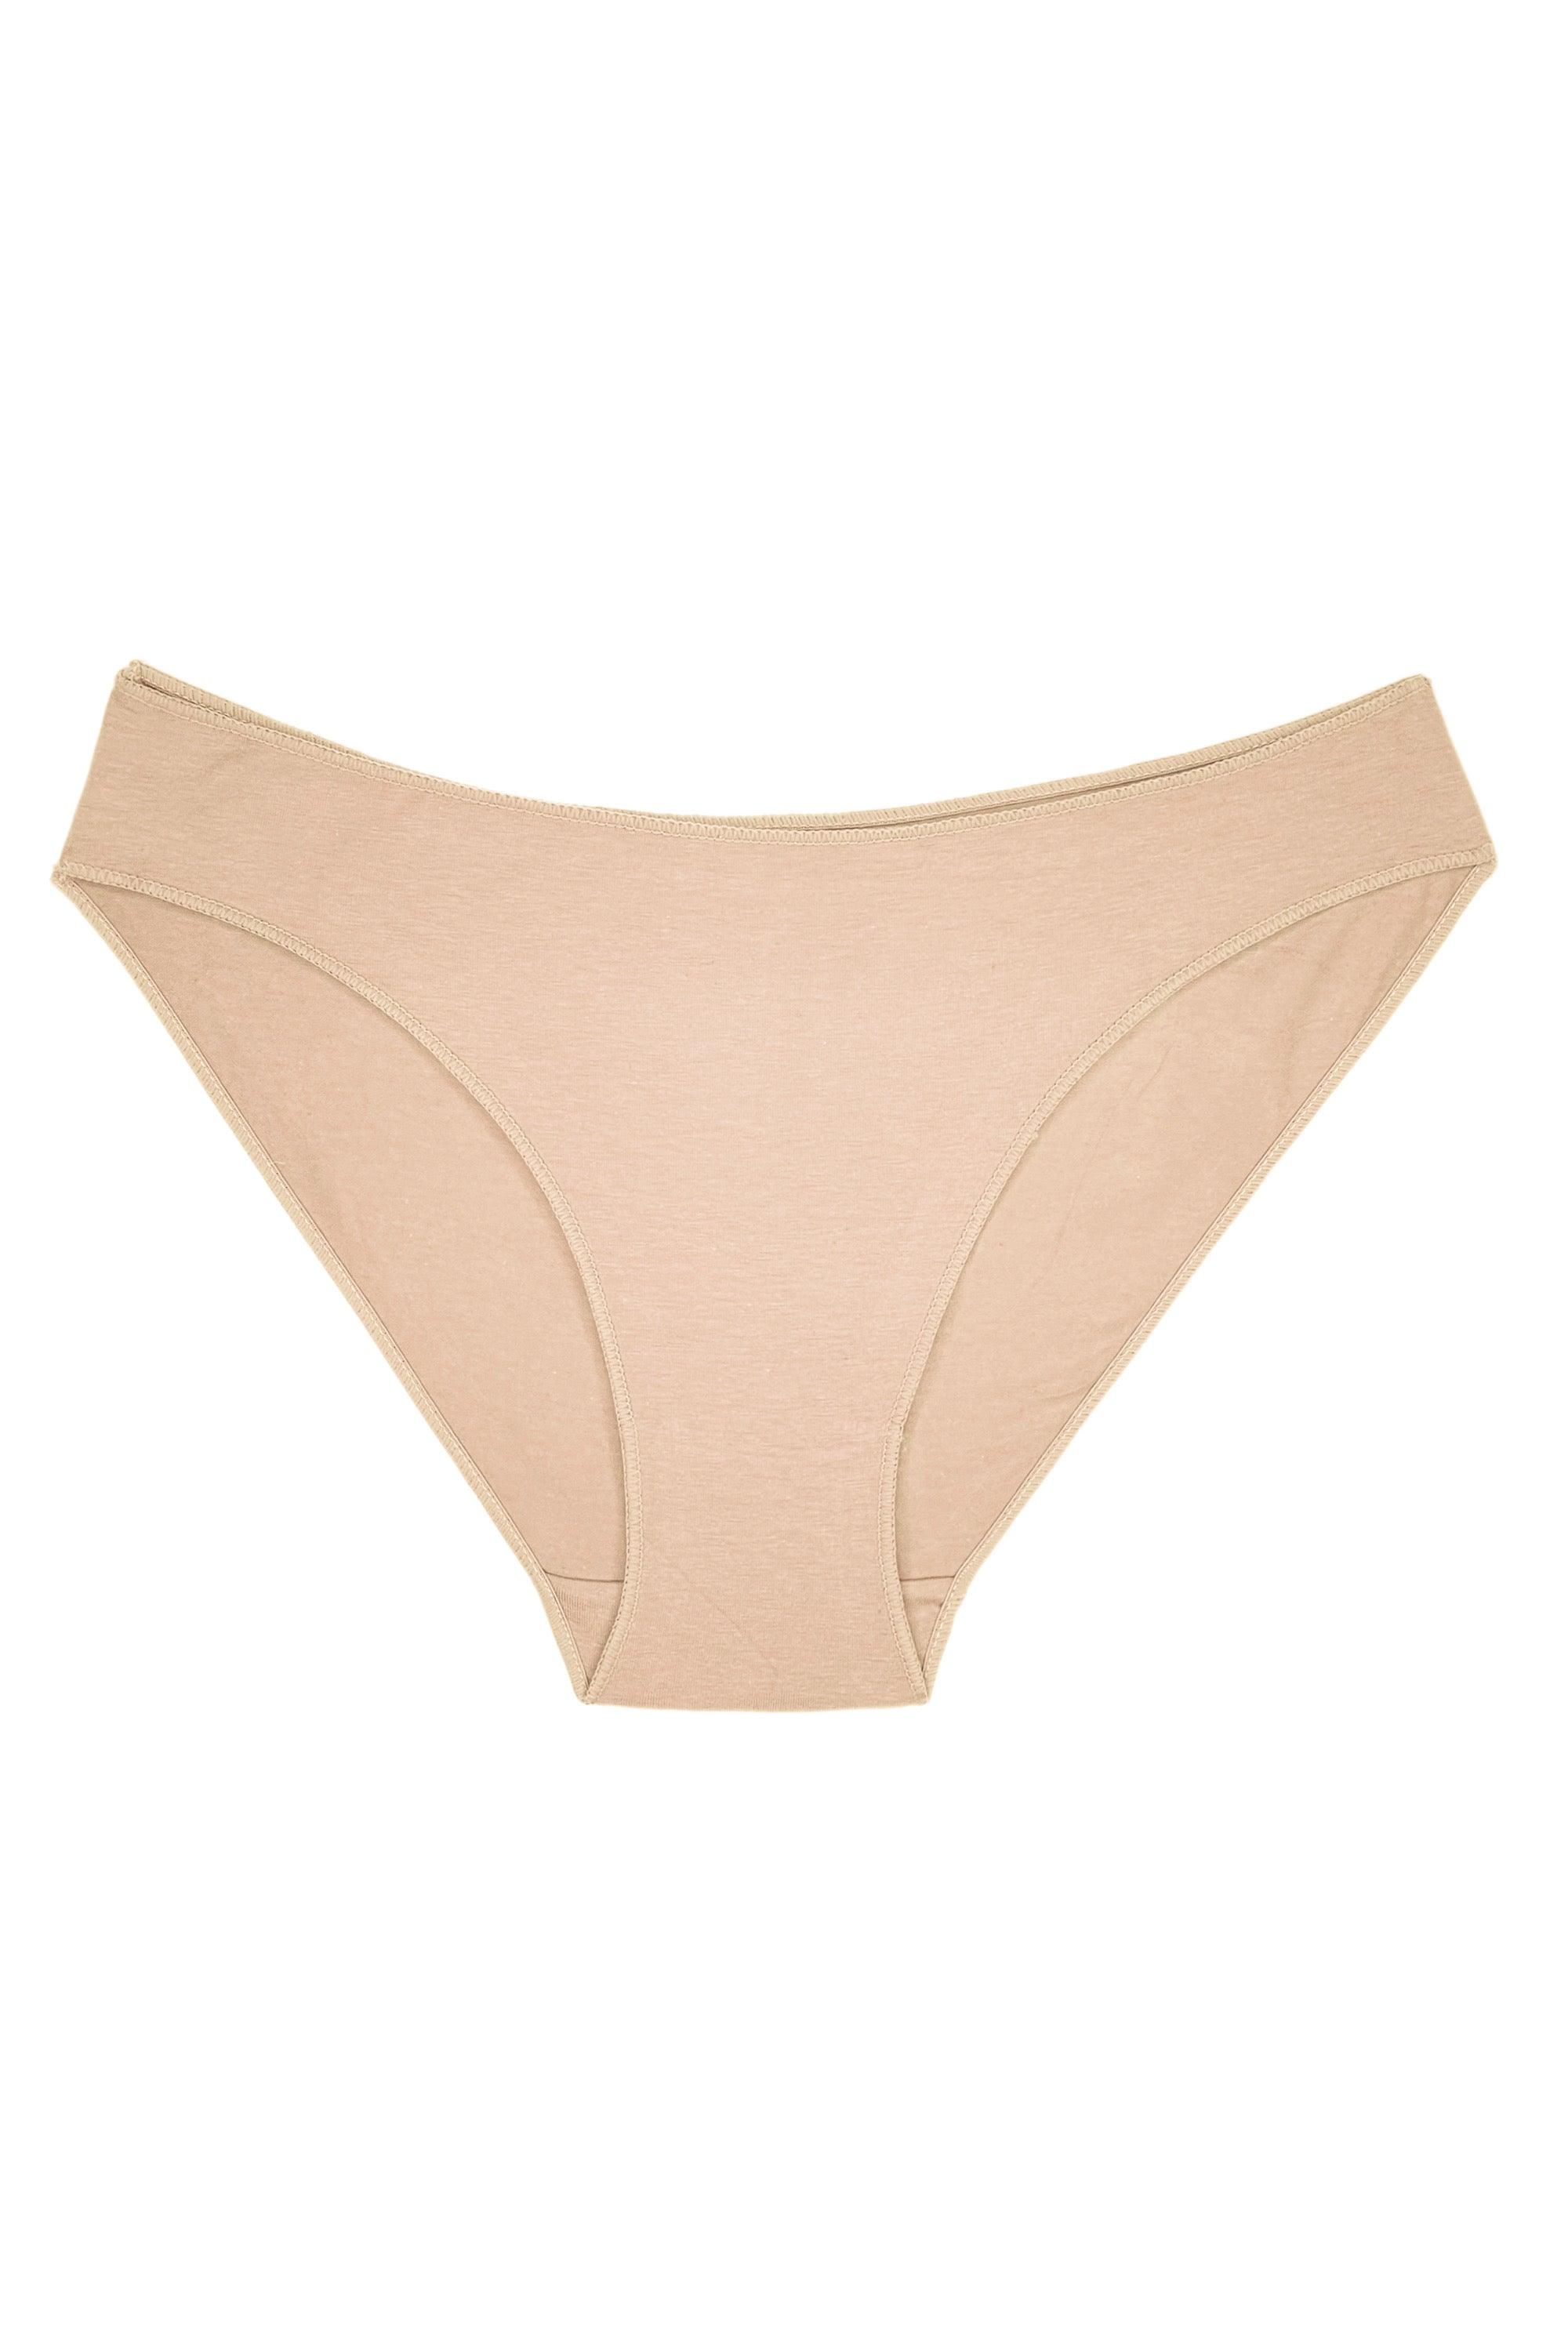 Comfort cotton beige slip panties - yesUndress